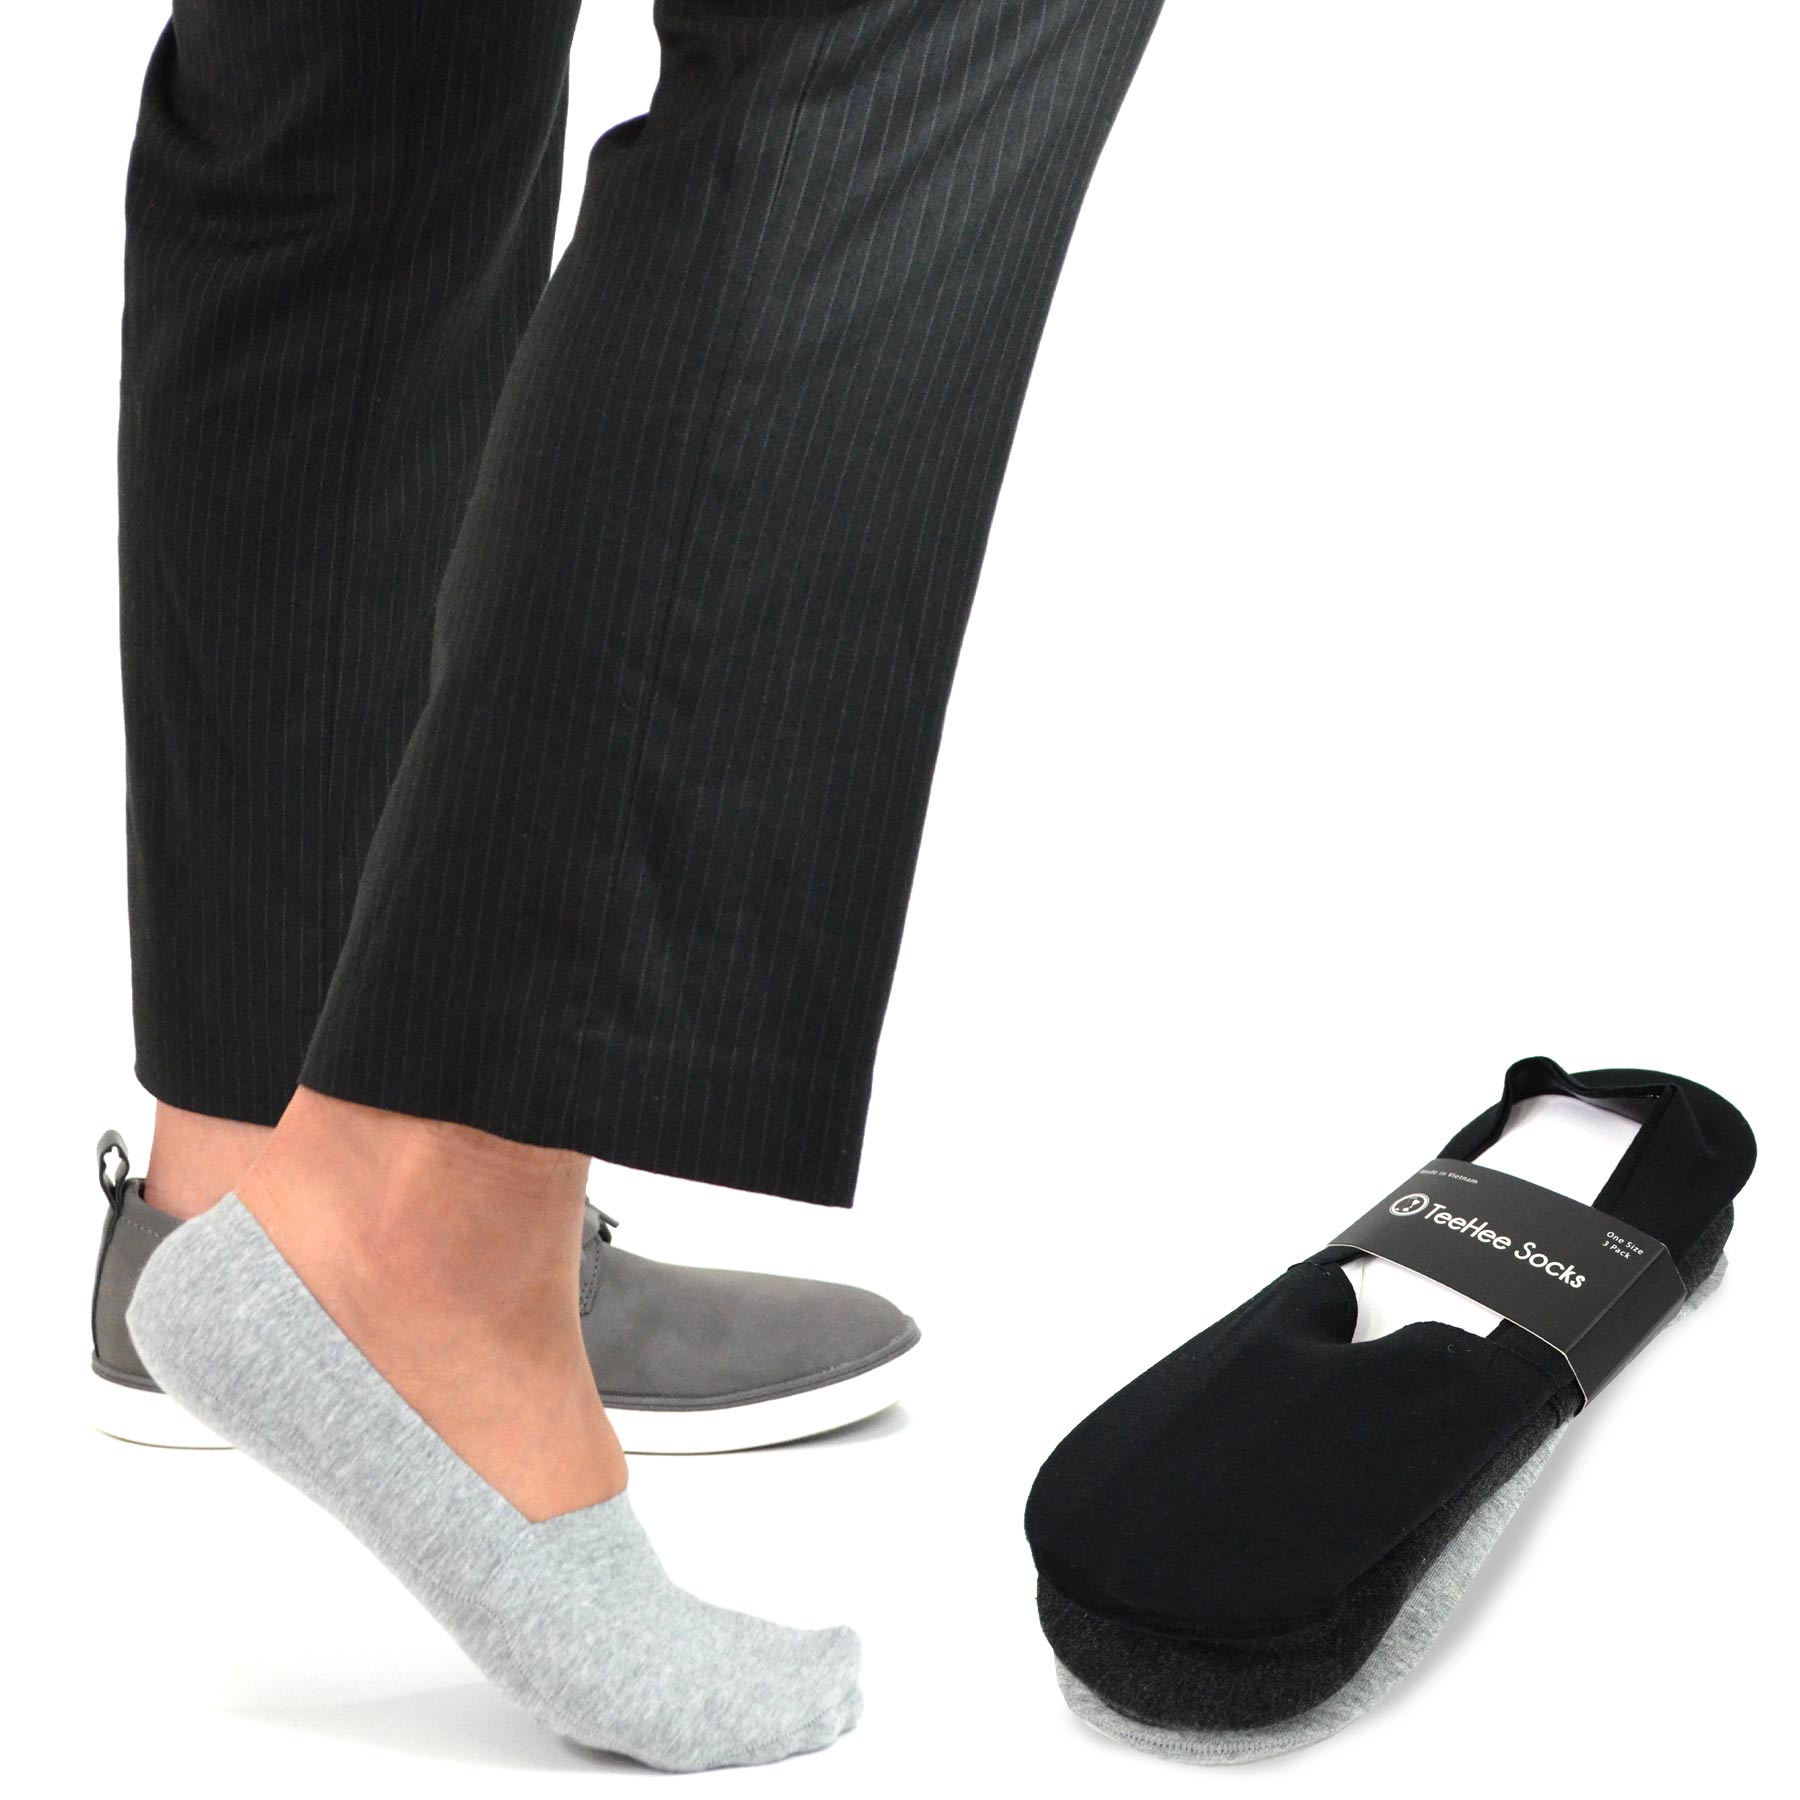 TeeHee Socks Women's Toe Topper Nylon No Show Pale Beige, Black 5-Pack